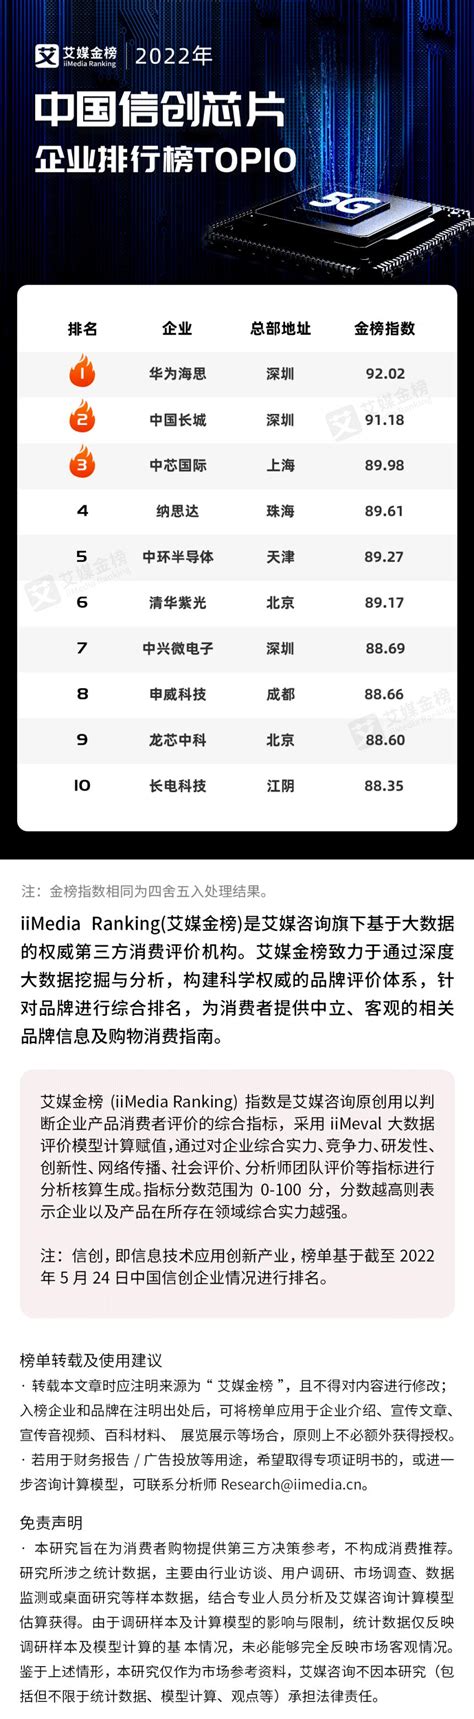 中国芯片公司排名前十(中国的芯片公司排名)_金纳莱网